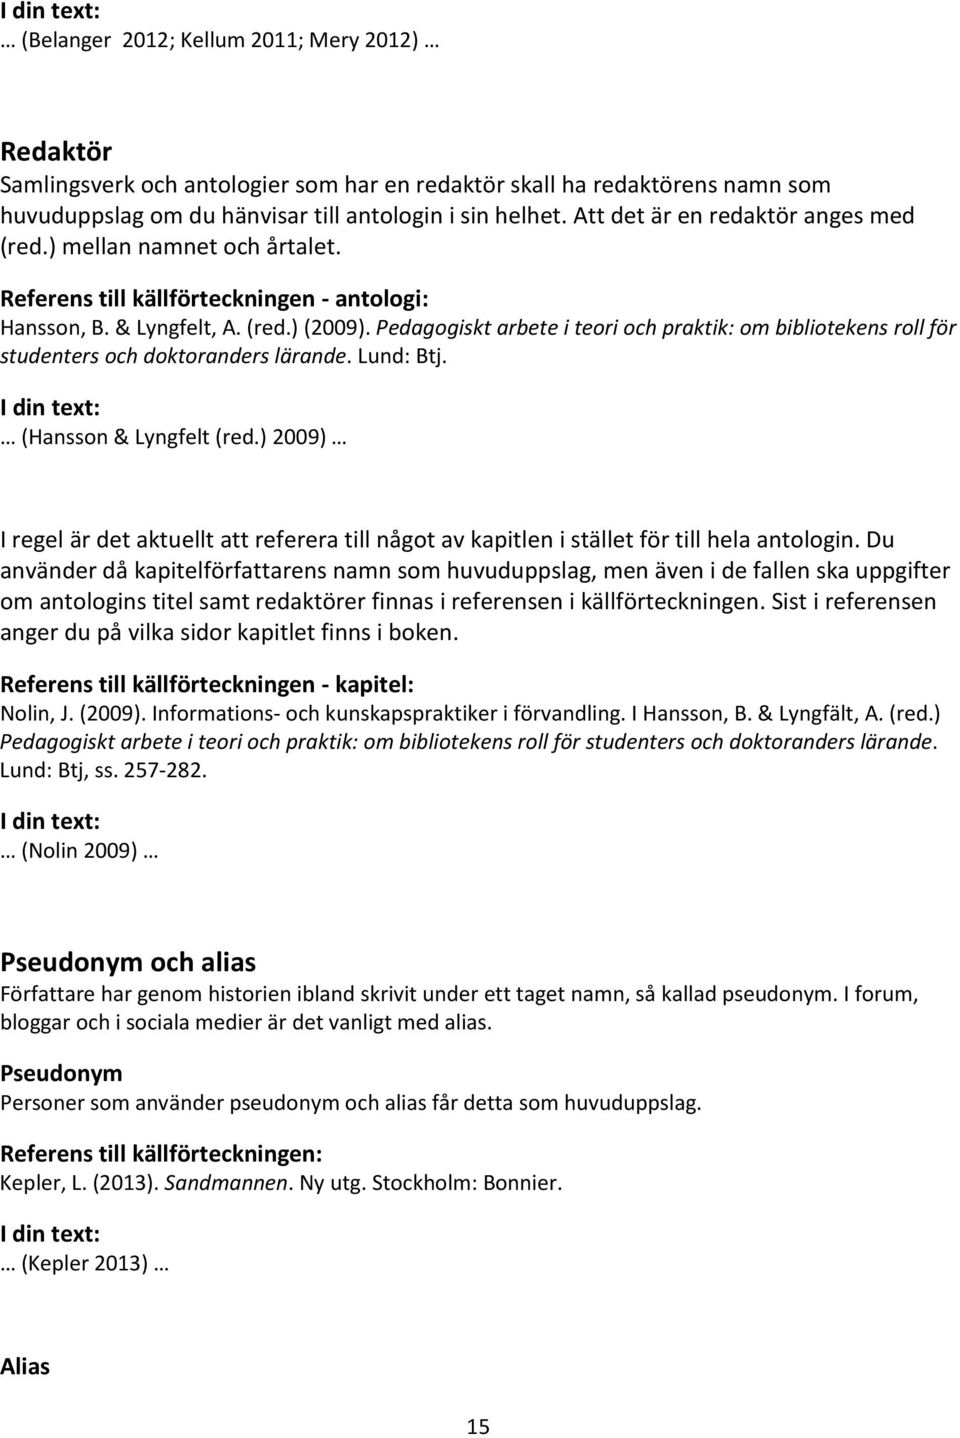 Pedagogiskt arbete i teori och praktik: om bibliotekens roll för studenters och doktoranders lärande. Lund: Btj. (Hansson & Lyngfelt (red.